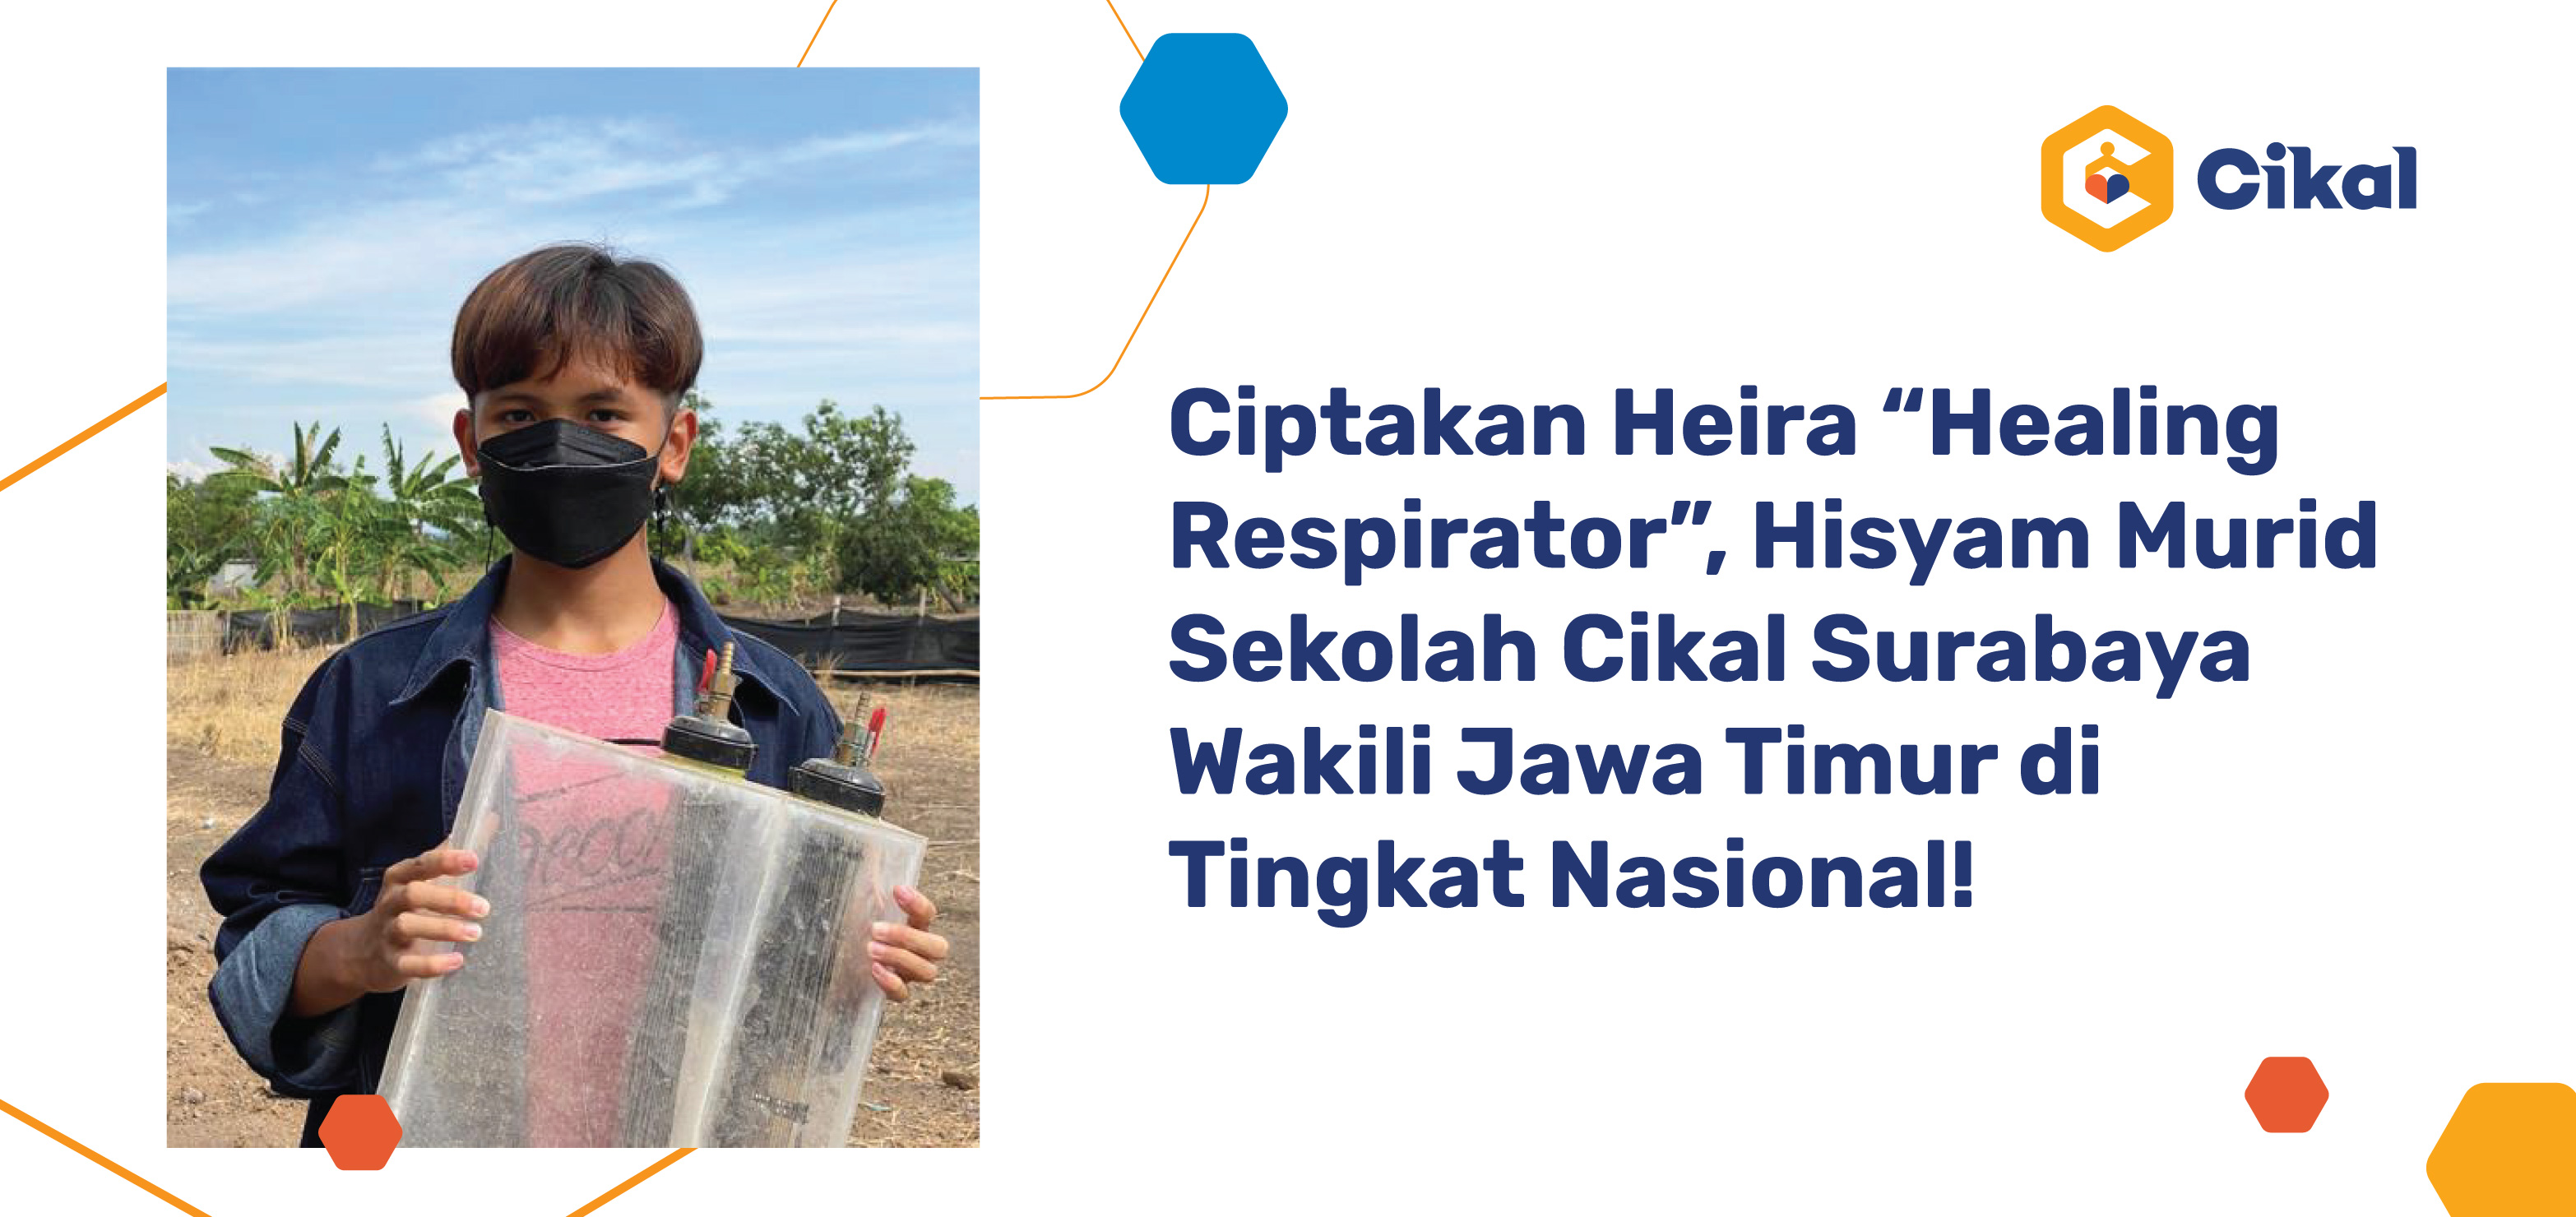 Ciptakan Heira “Healing Respirator”, Hisyam Murid Sekolah Cikal Surabaya Wakili Jawa Timur di Tingkat Nasional! 